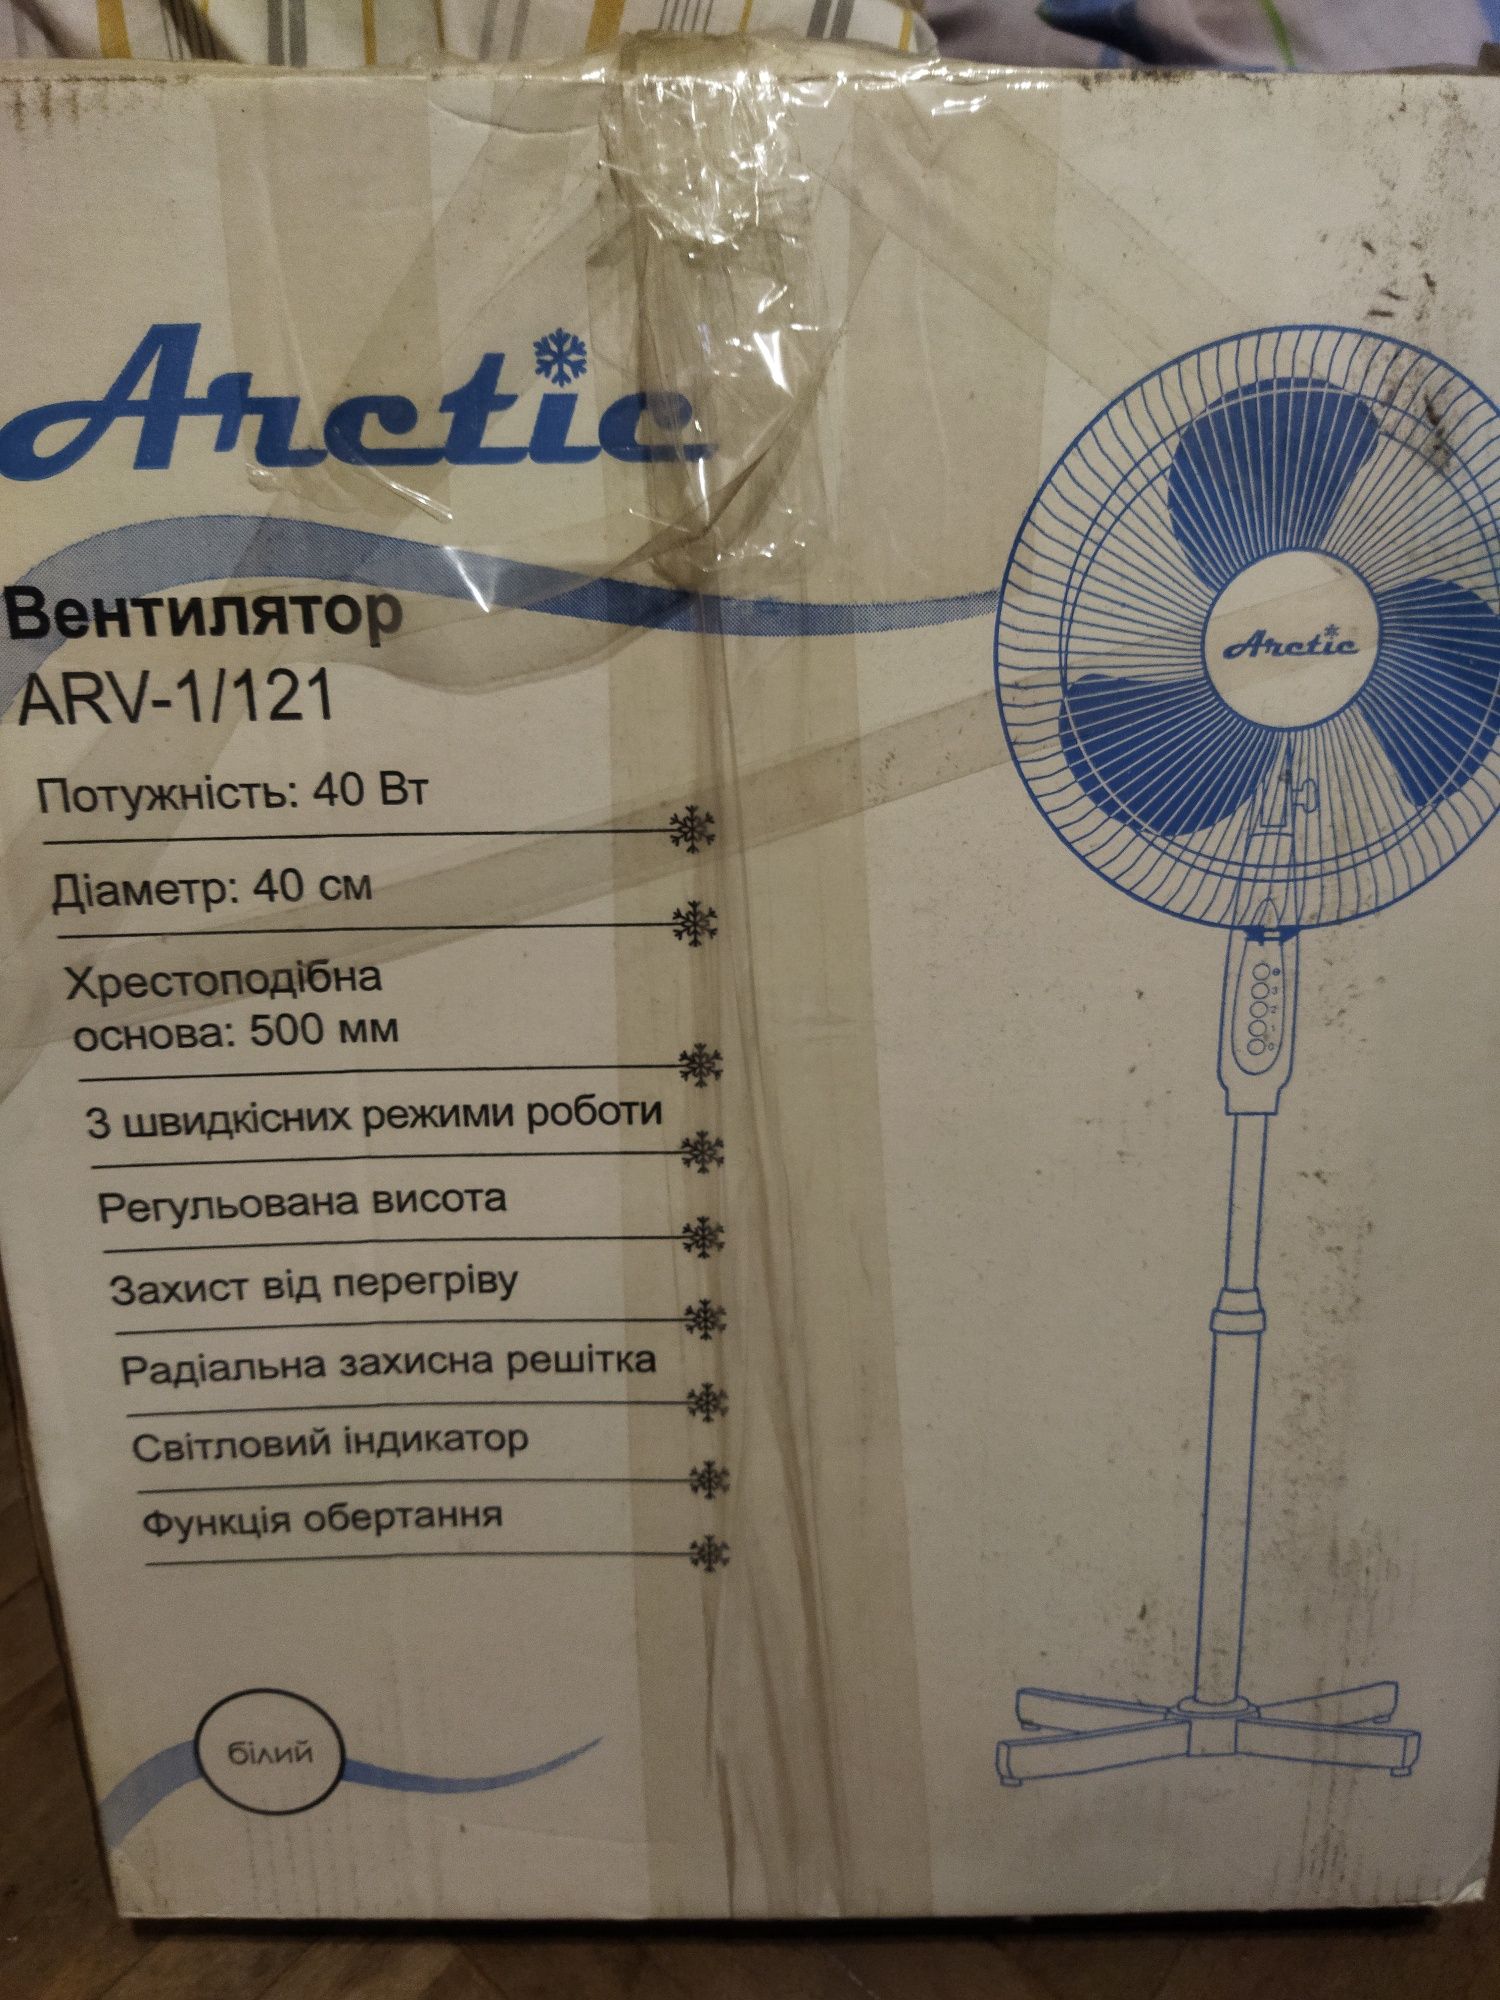 Вентилятор Arctic arv-1/121